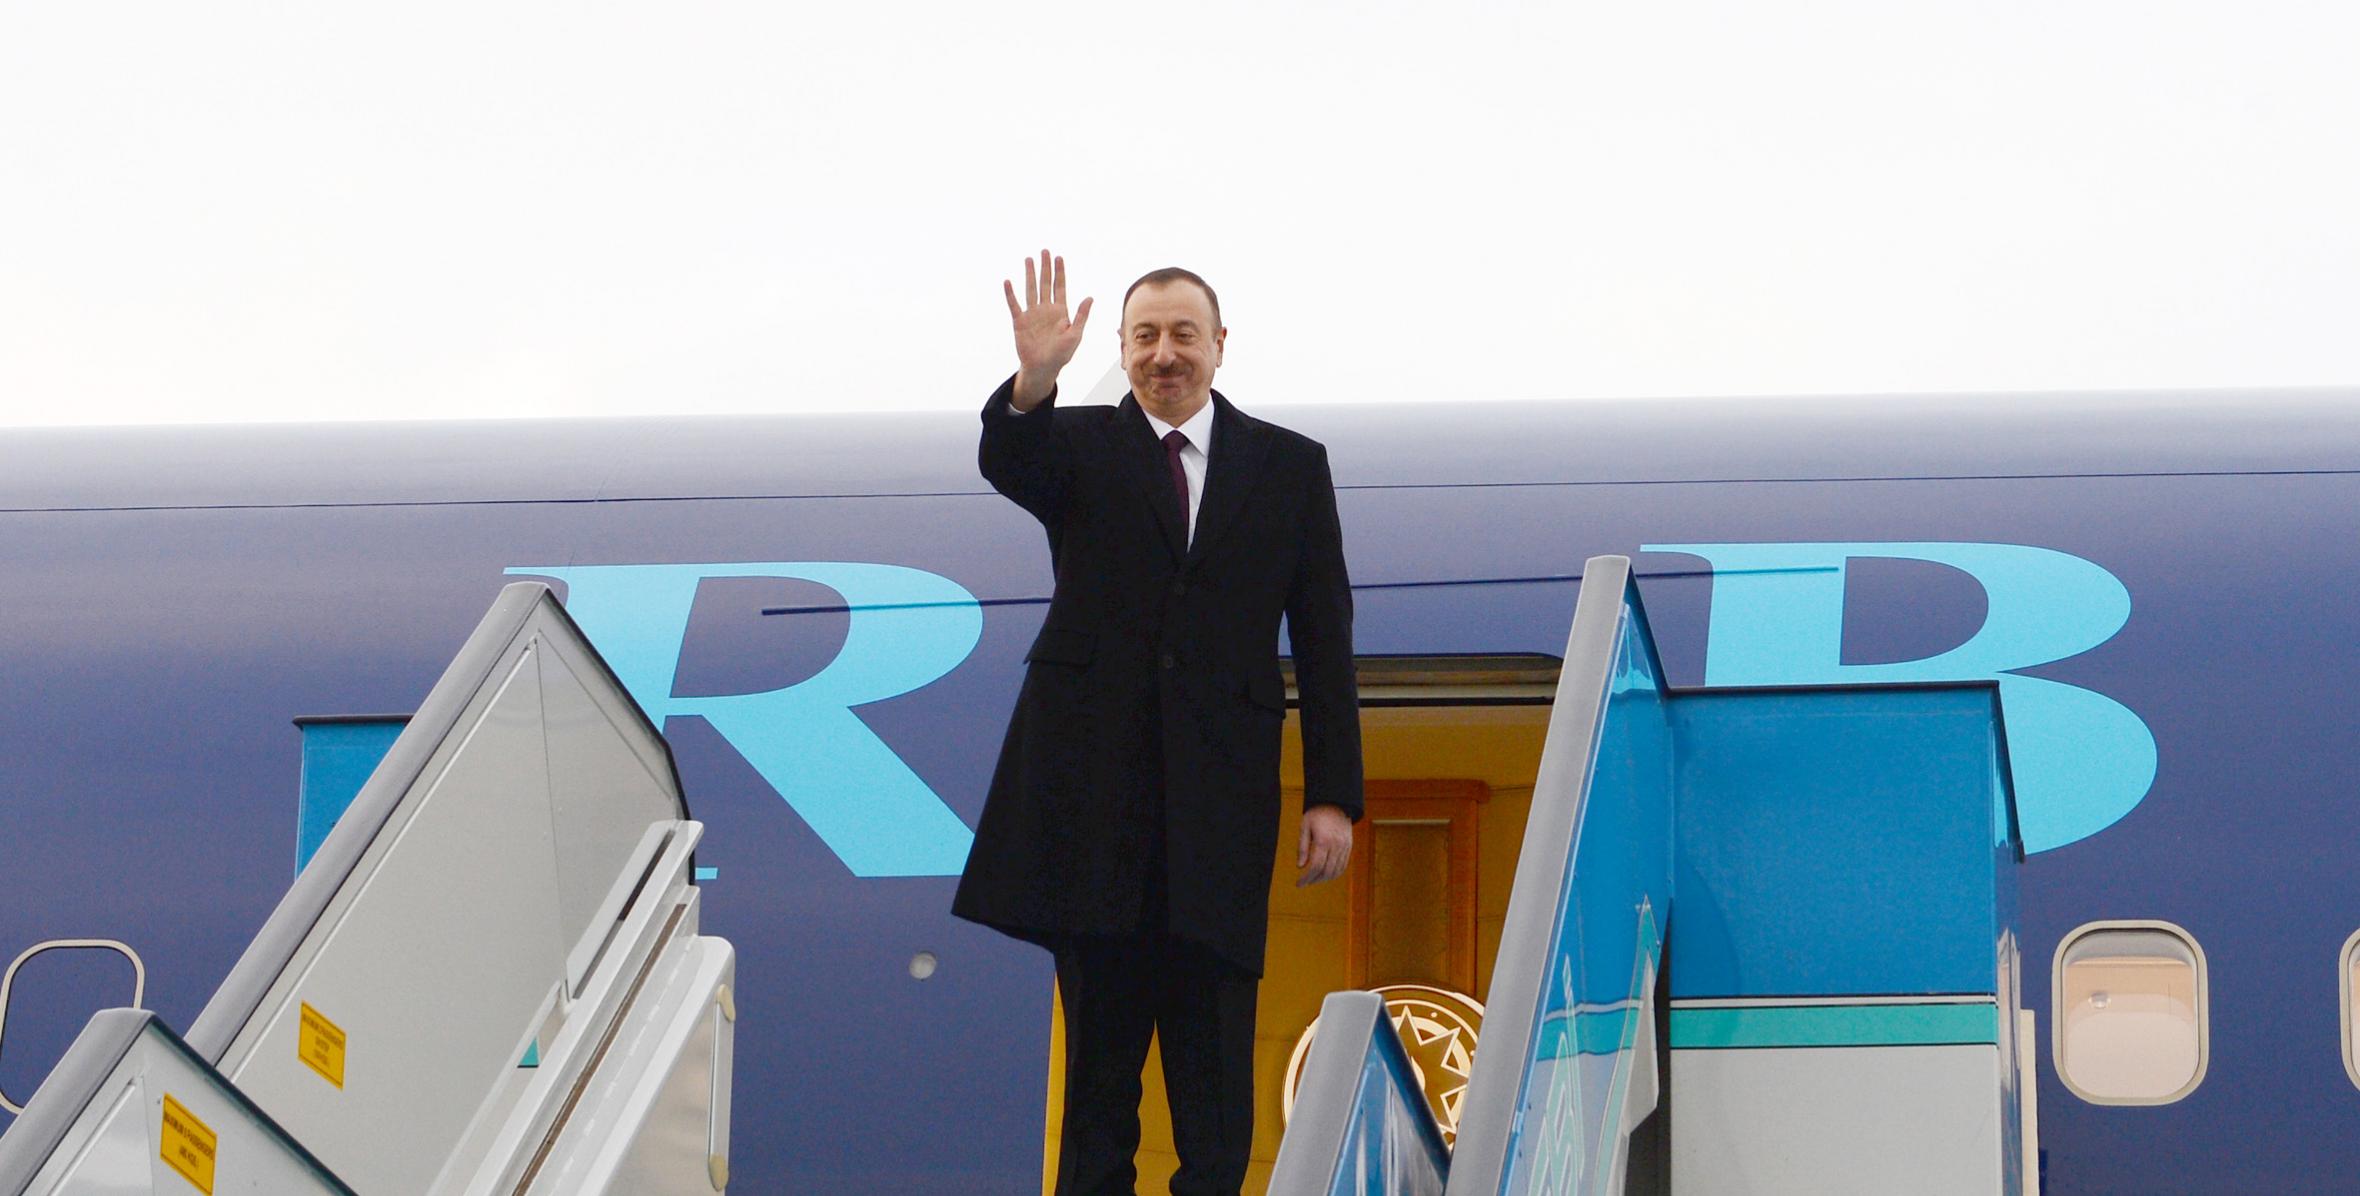 Завершился государственный визит Ильхама Алиева в Турецкую Республику